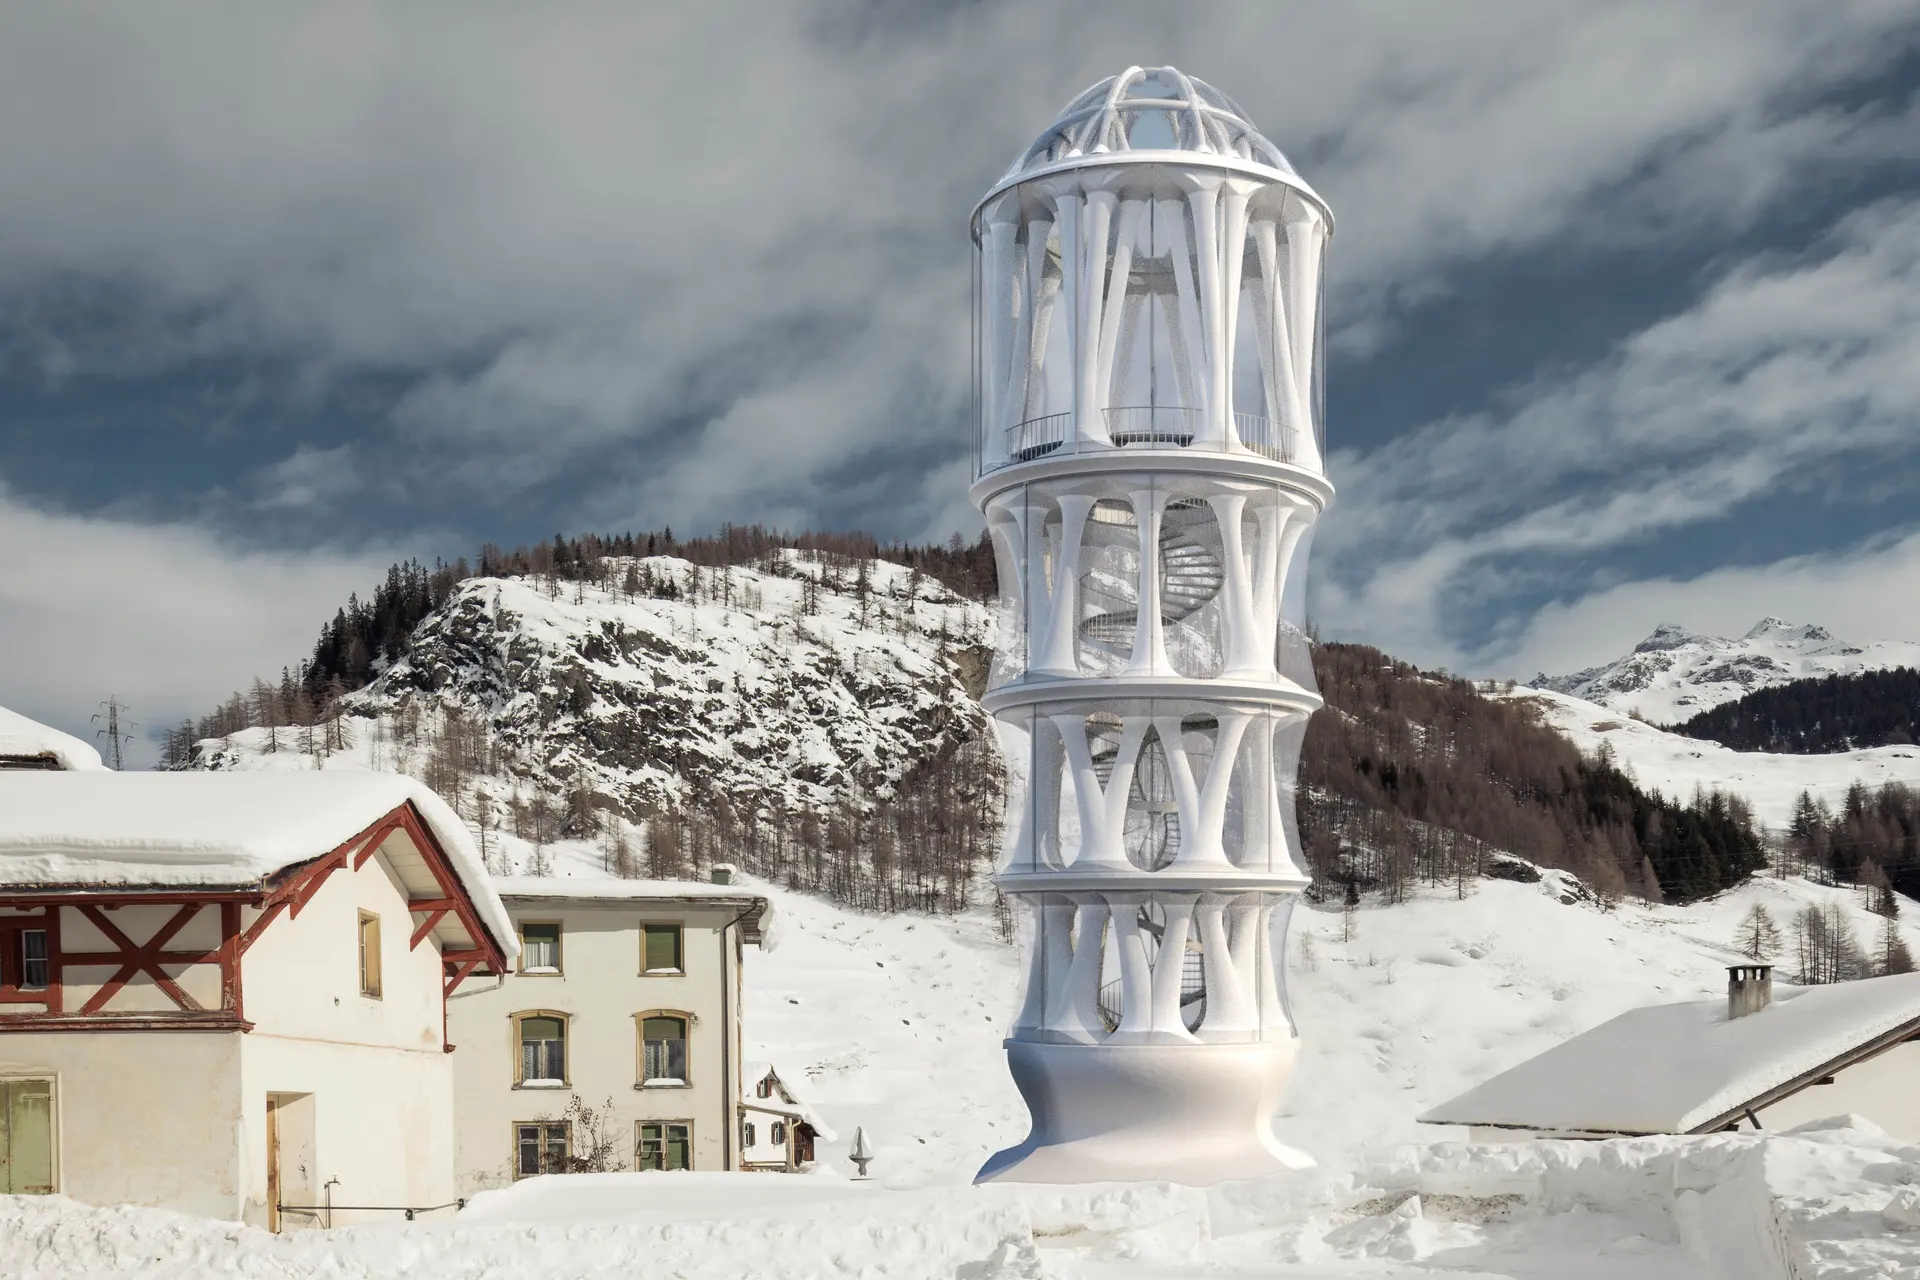 900時間で塔を印刷、スイスで劇場ドームを備えた世界一高い3Dプリントタワー建設中